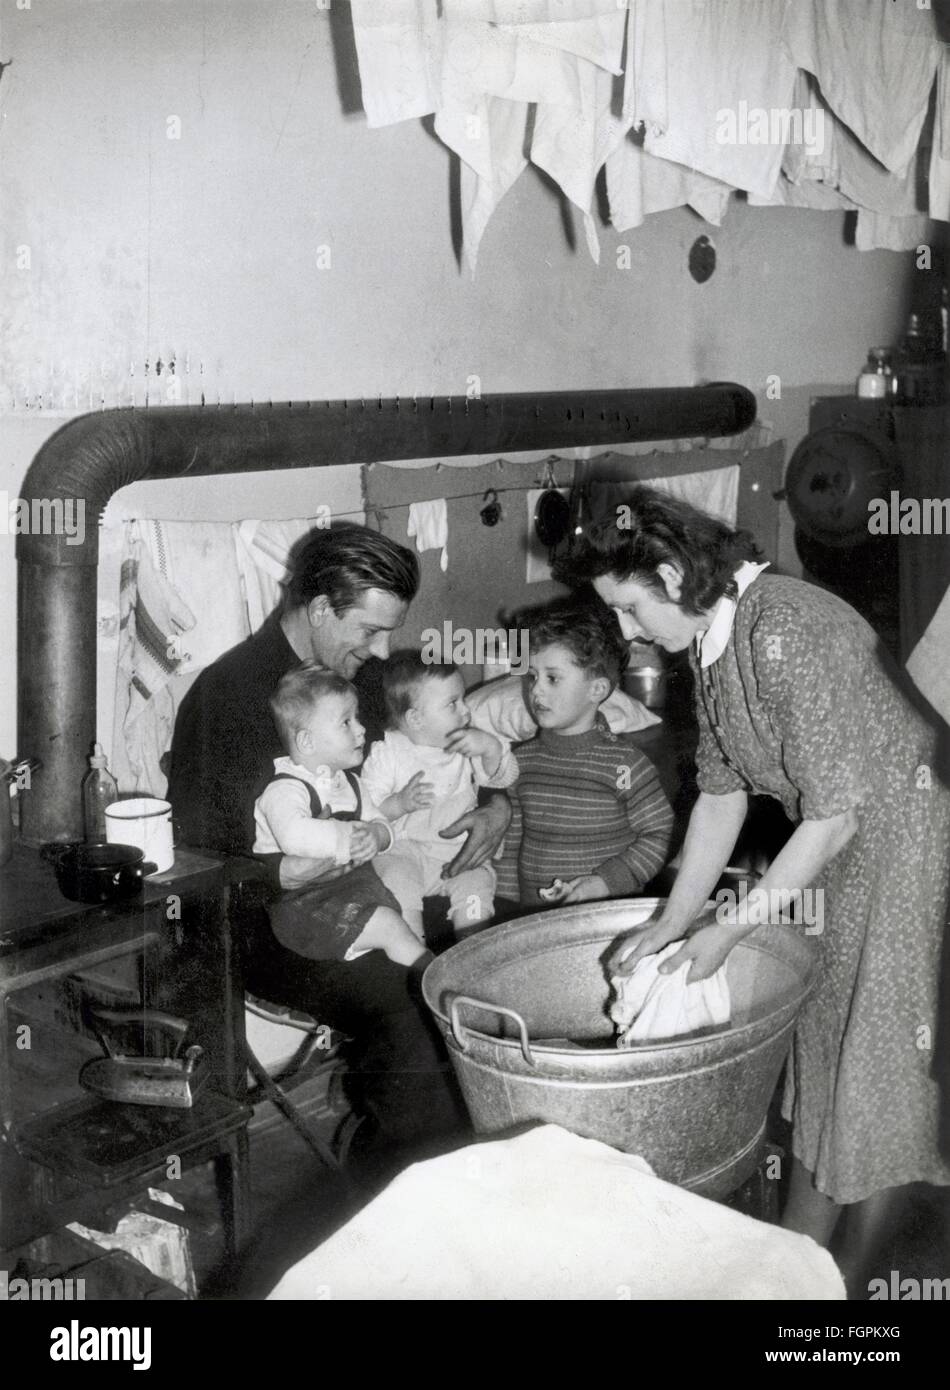 Geographie / Reisen, Deutschland, München, Menschen, Wohnungsnot, Familie mit drei Kindern in Notwohnung, um 1950, Zusatzrechte-Clearences-nicht vorhanden Stockfoto